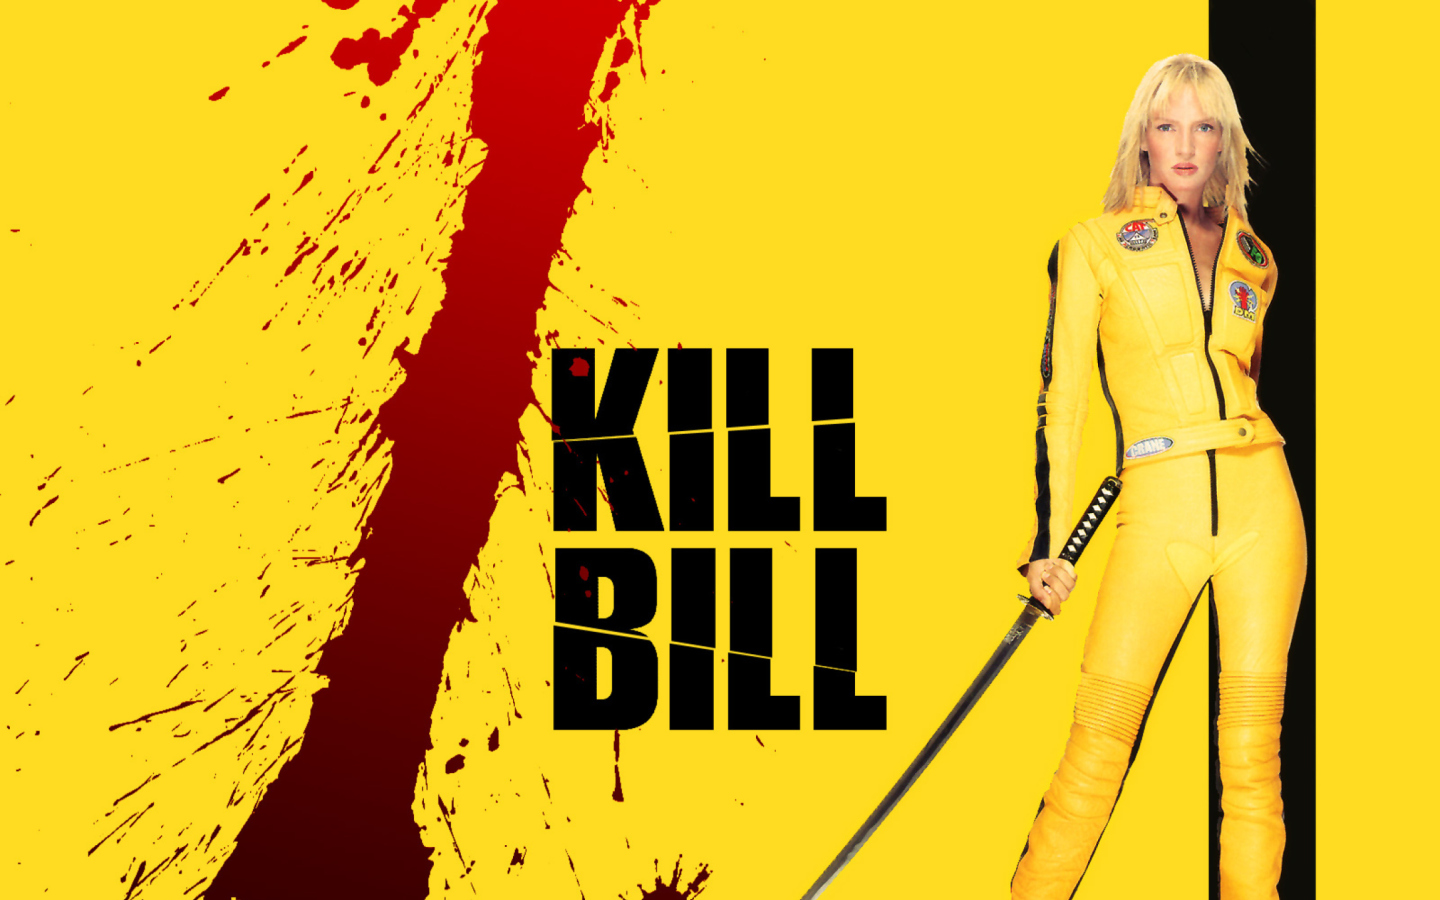 Das Kill Bill Wallpaper 1440x900